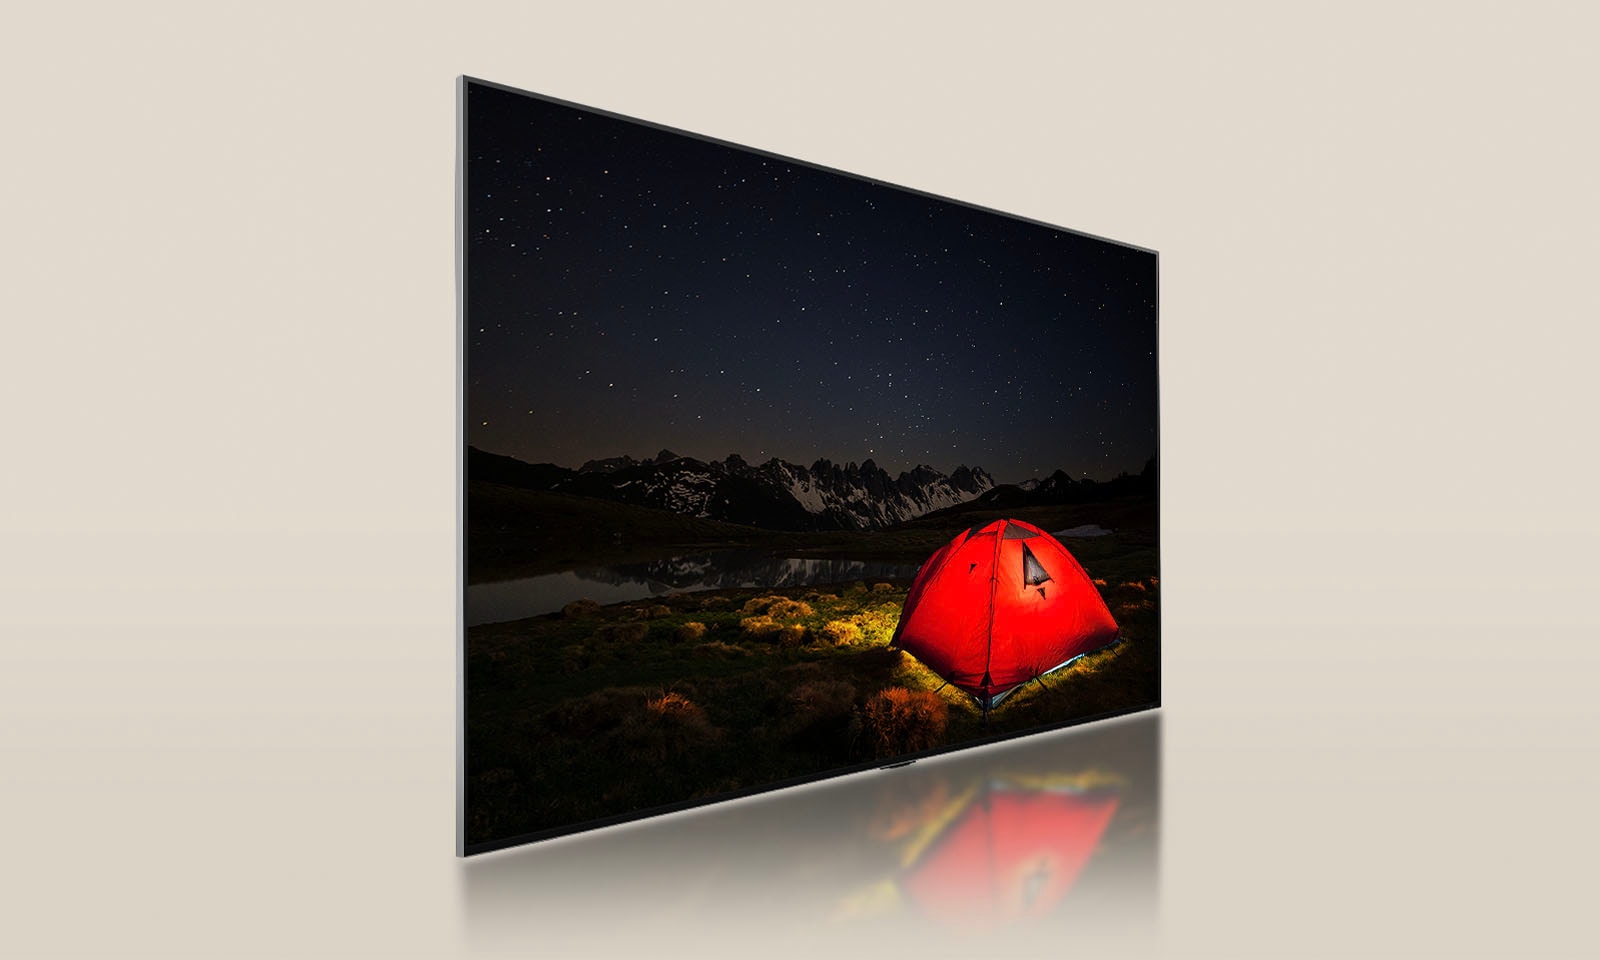 搭載調光螢幕的 LG TV，顯示有著亮紅帳篷的黑夜。藍色背光面板在電視背後細分。小小的調光區塊散落於面板上。然後面板和電視合併，讓螢幕變得更亮、更清晰。